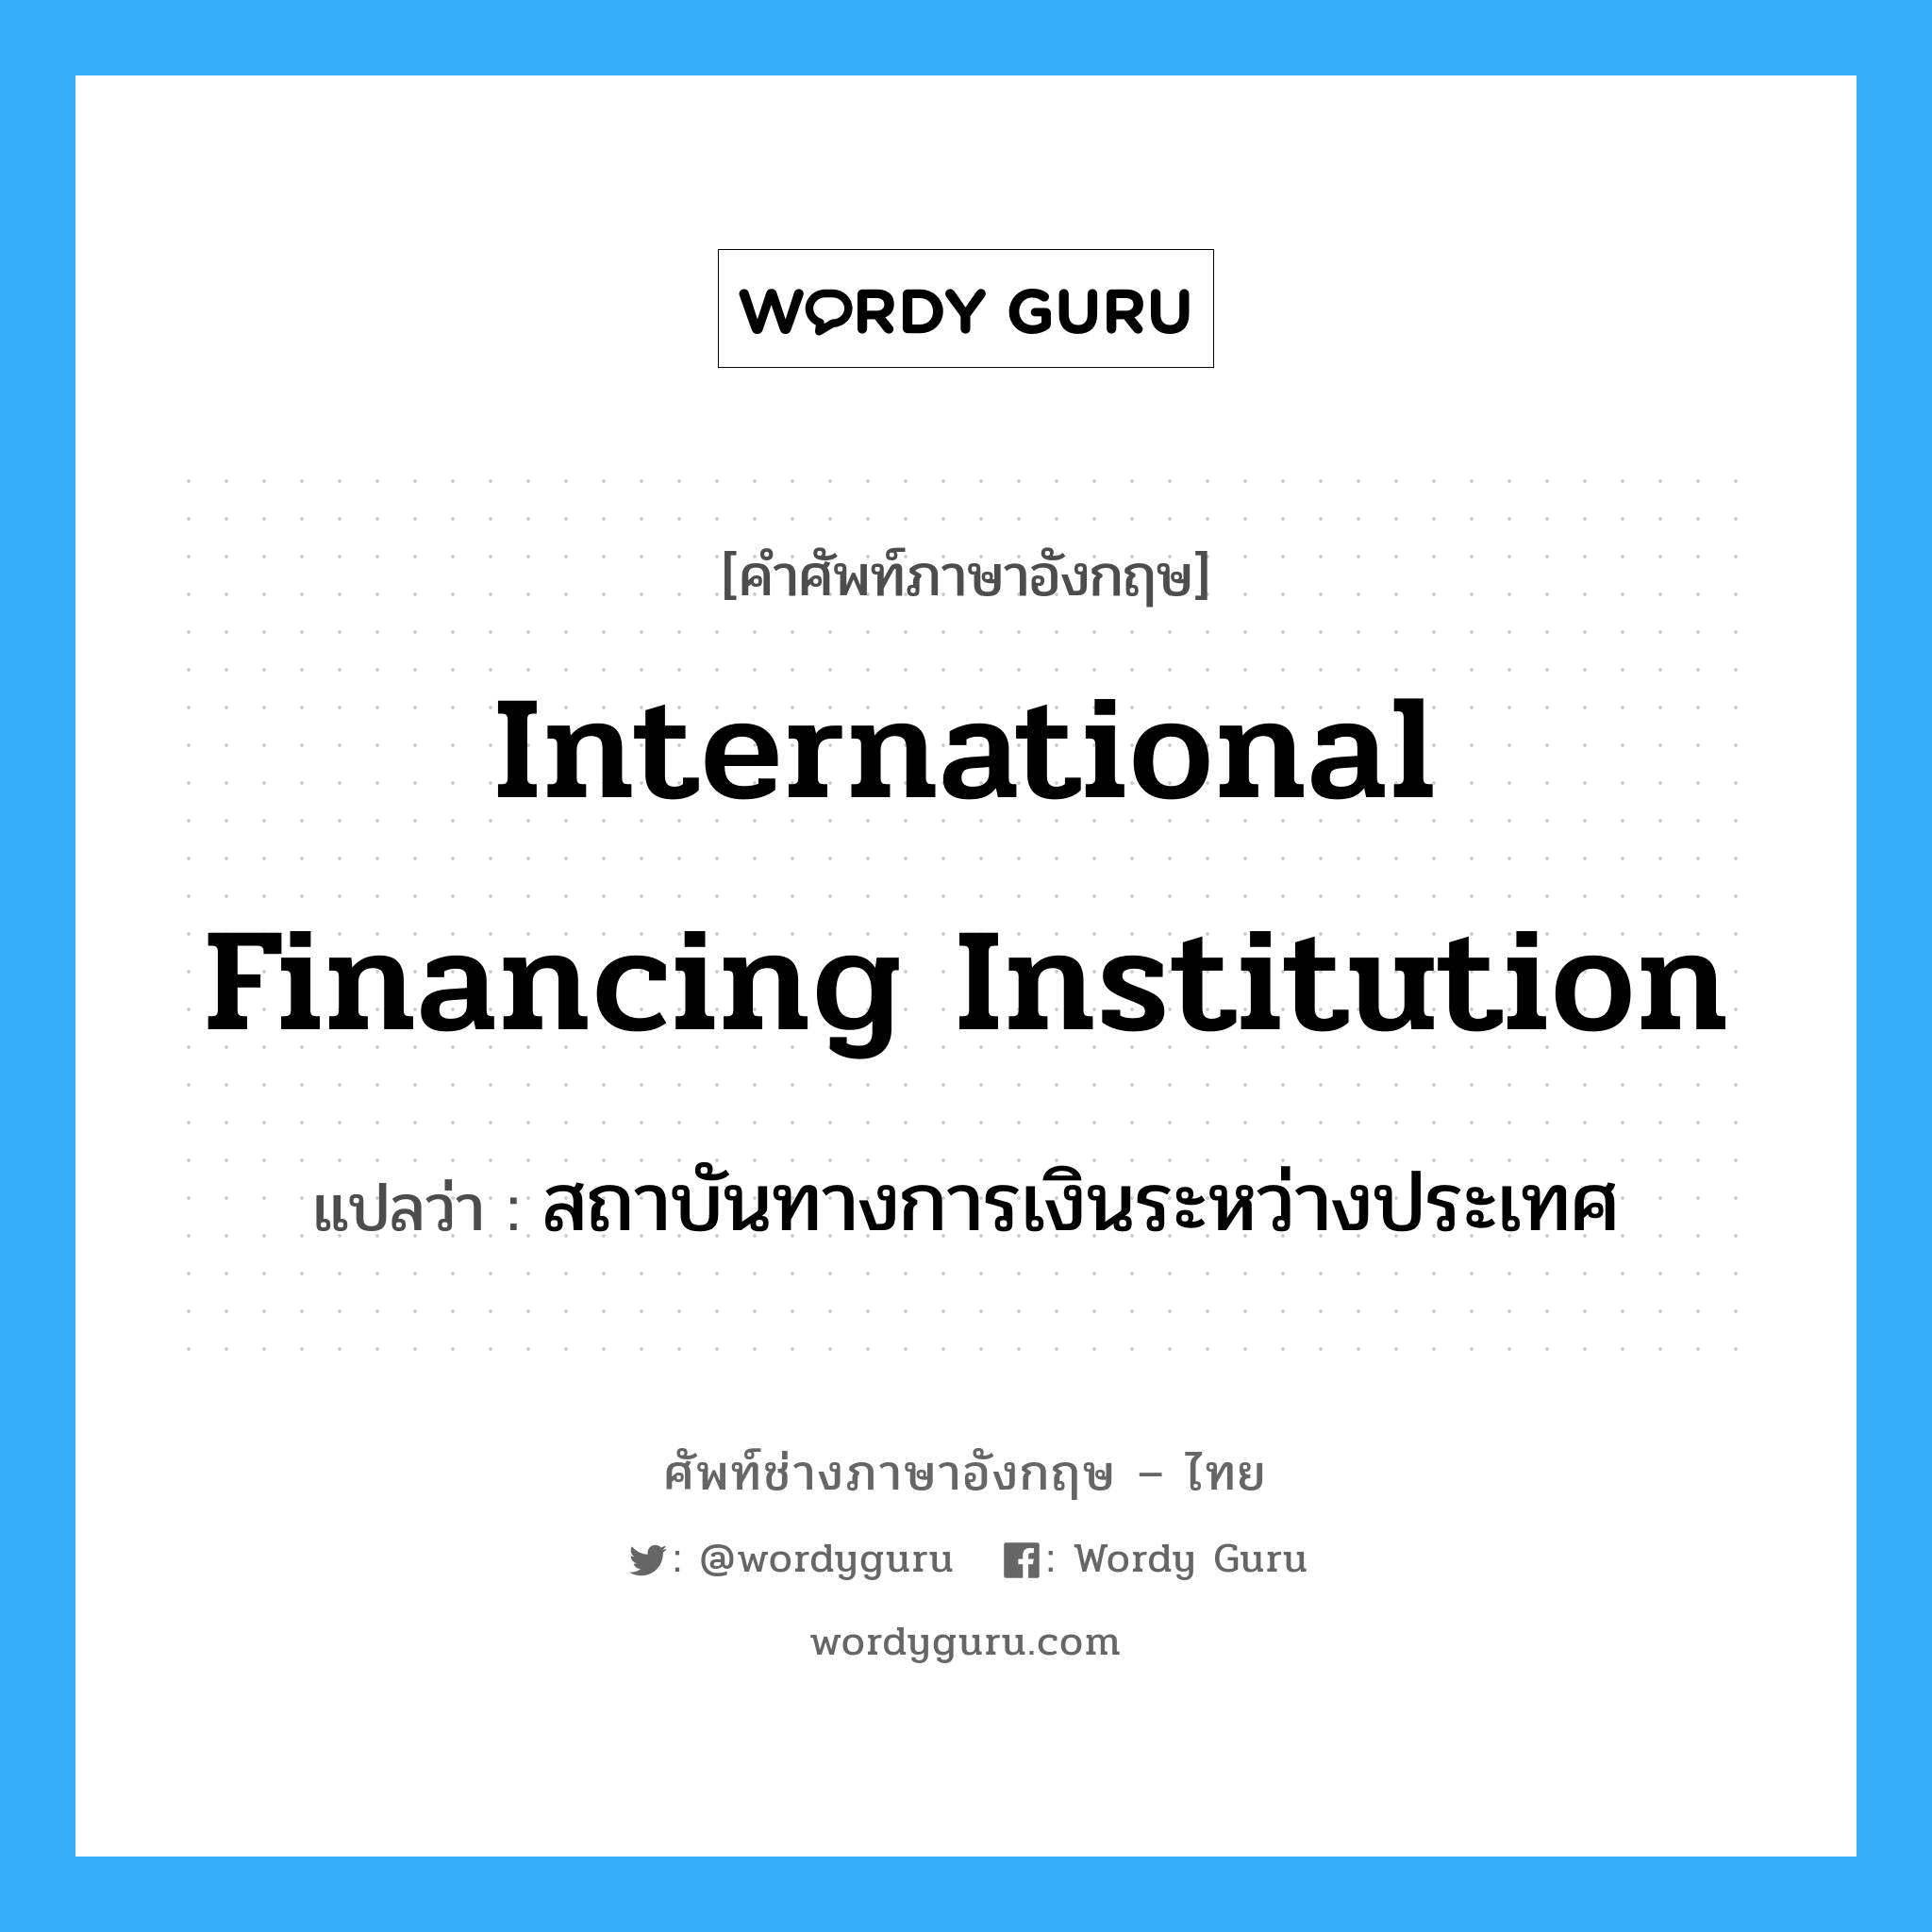 International Financing Institution แปลว่า?, คำศัพท์ช่างภาษาอังกฤษ - ไทย International Financing Institution คำศัพท์ภาษาอังกฤษ International Financing Institution แปลว่า สถาบันทางการเงินระหว่างประเทศ